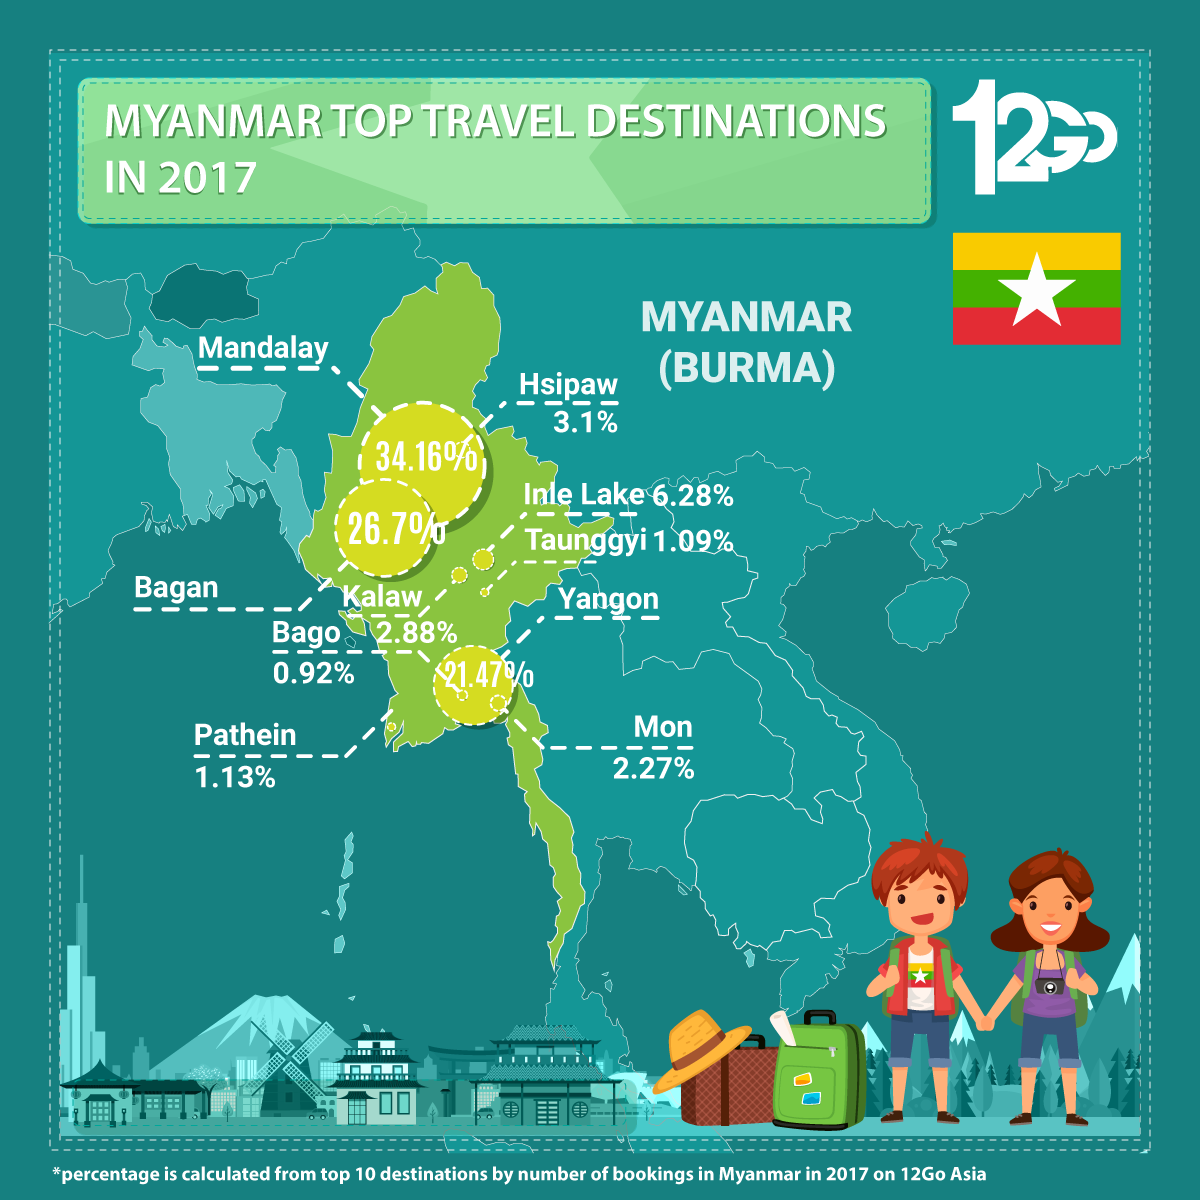 Myanmar Top Travel Destinations in 2017 Infographic